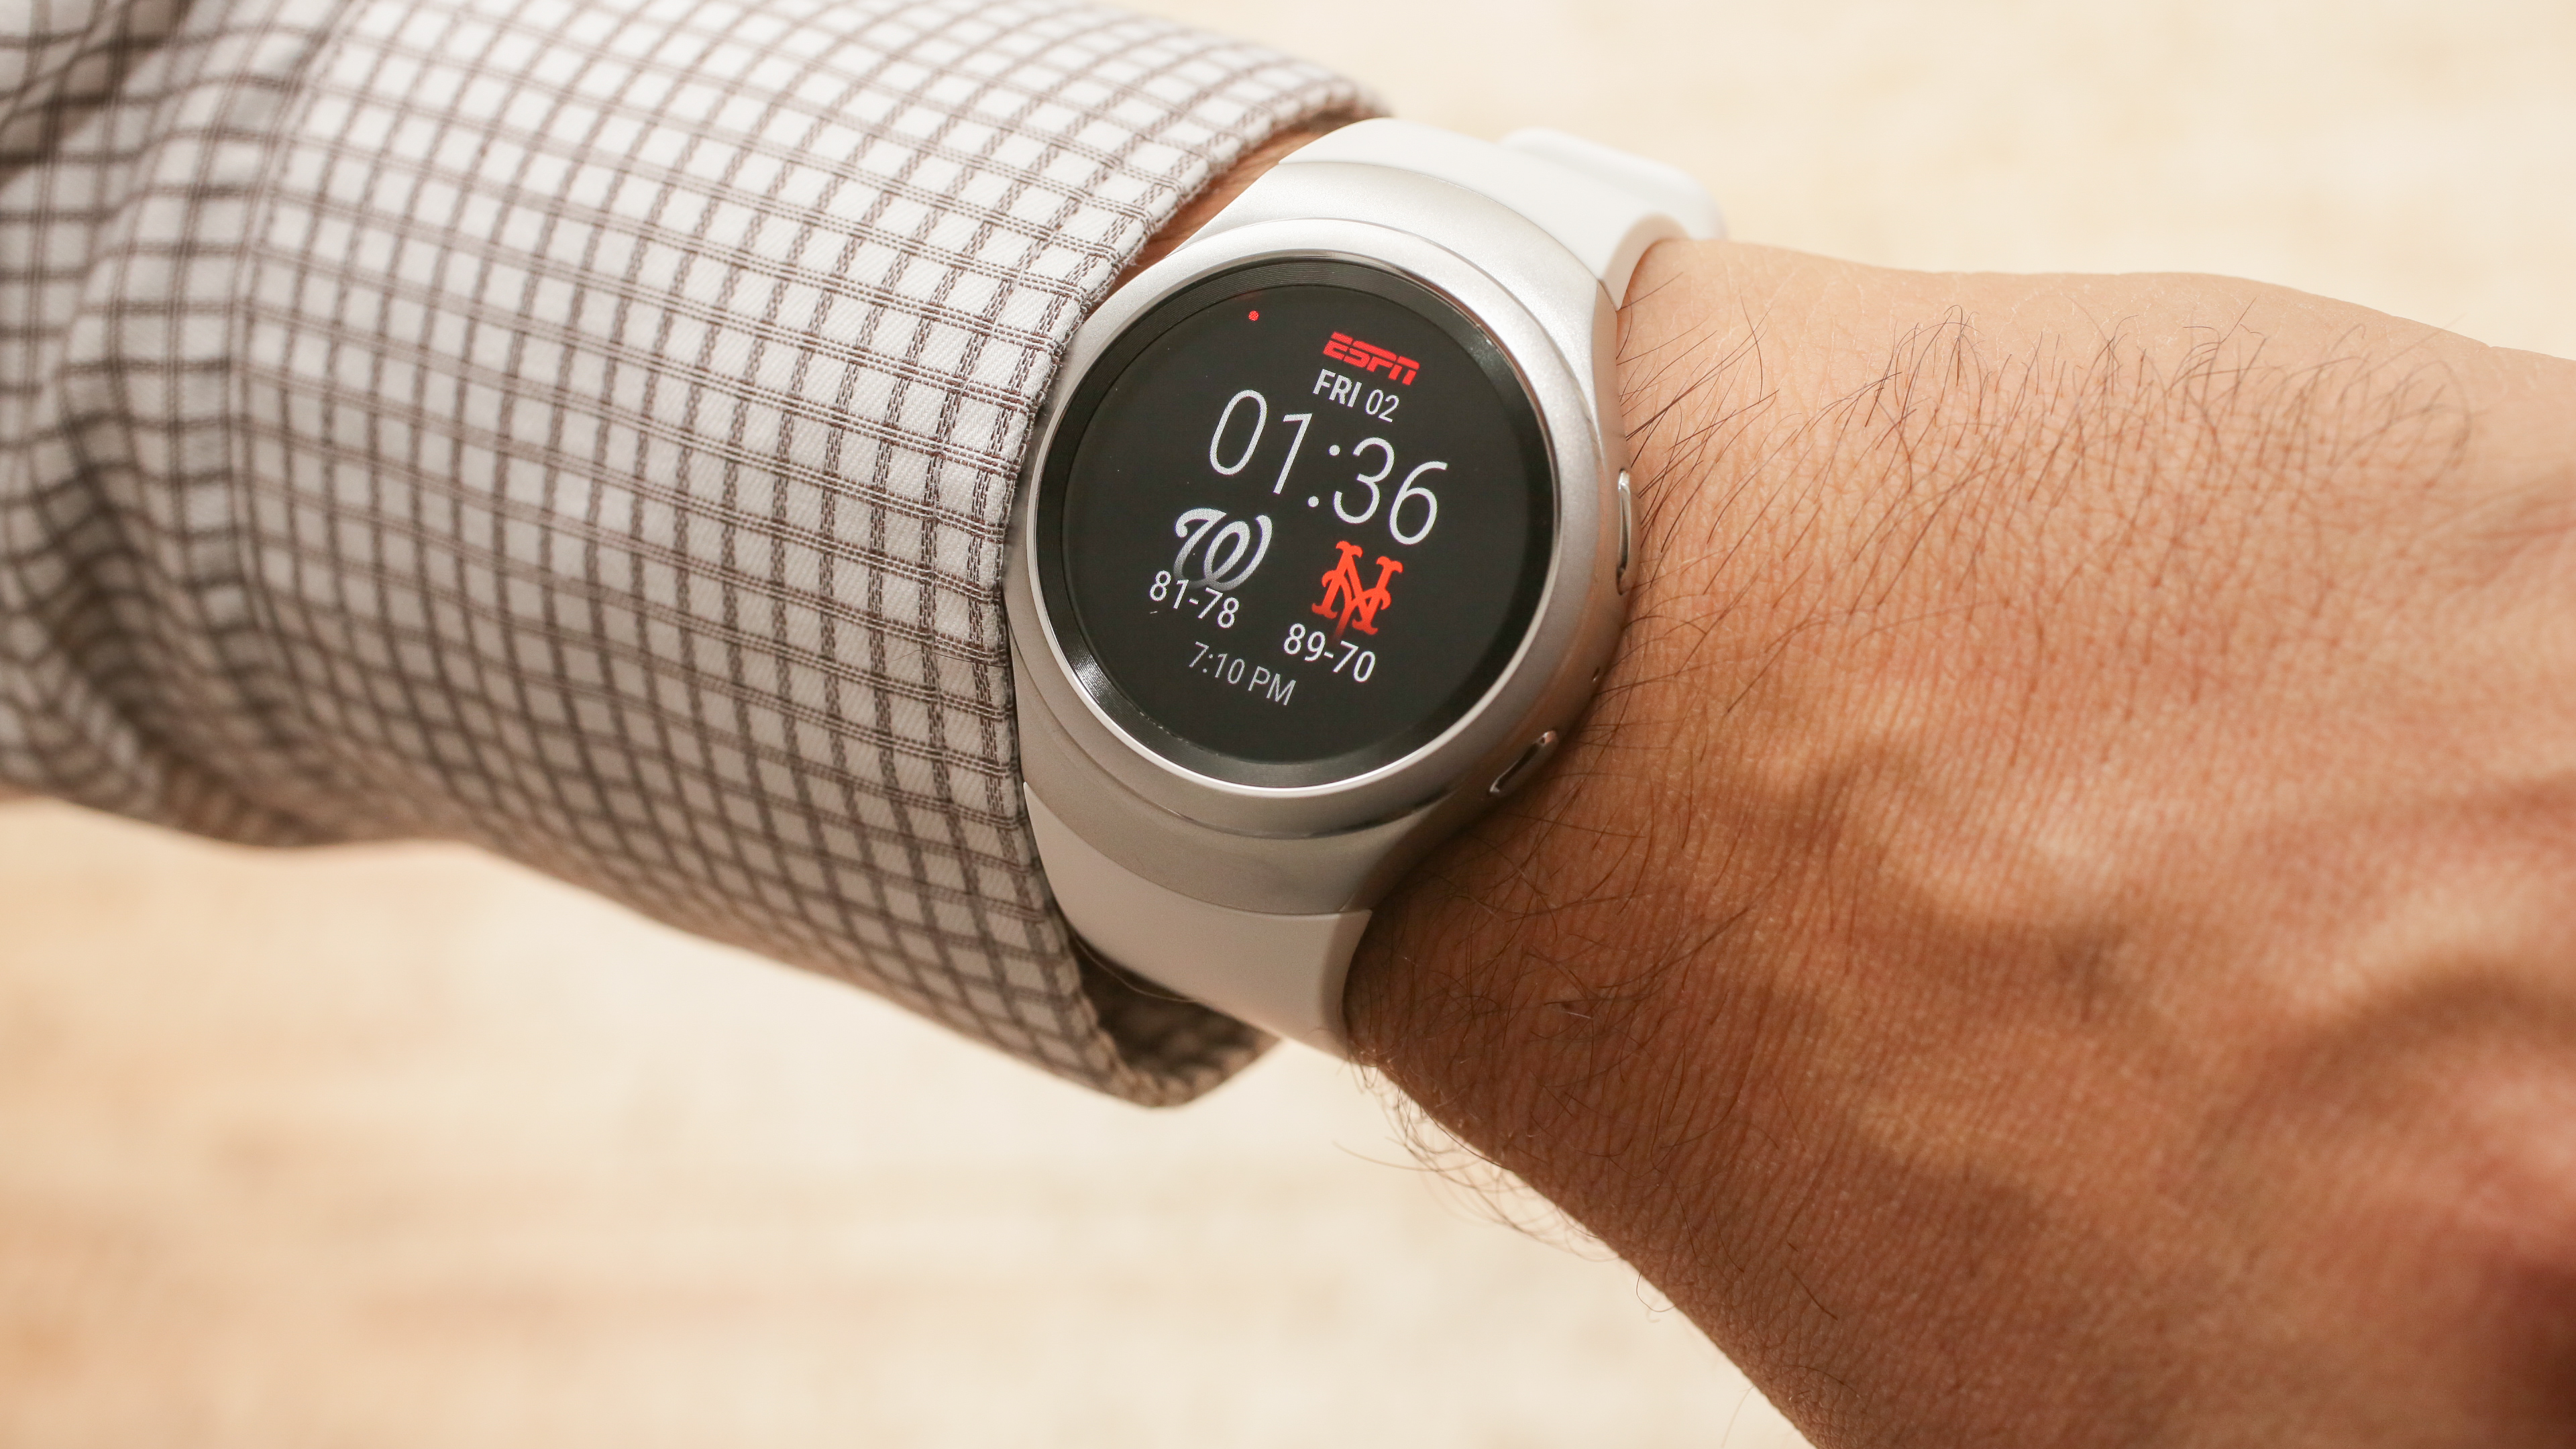 Galaxy watch измерение давления. Часы с давлением. Gear s3 датчик давления. Samsung watch 5 watch face Electric Meter. Картинки на часы самсунг вотч.